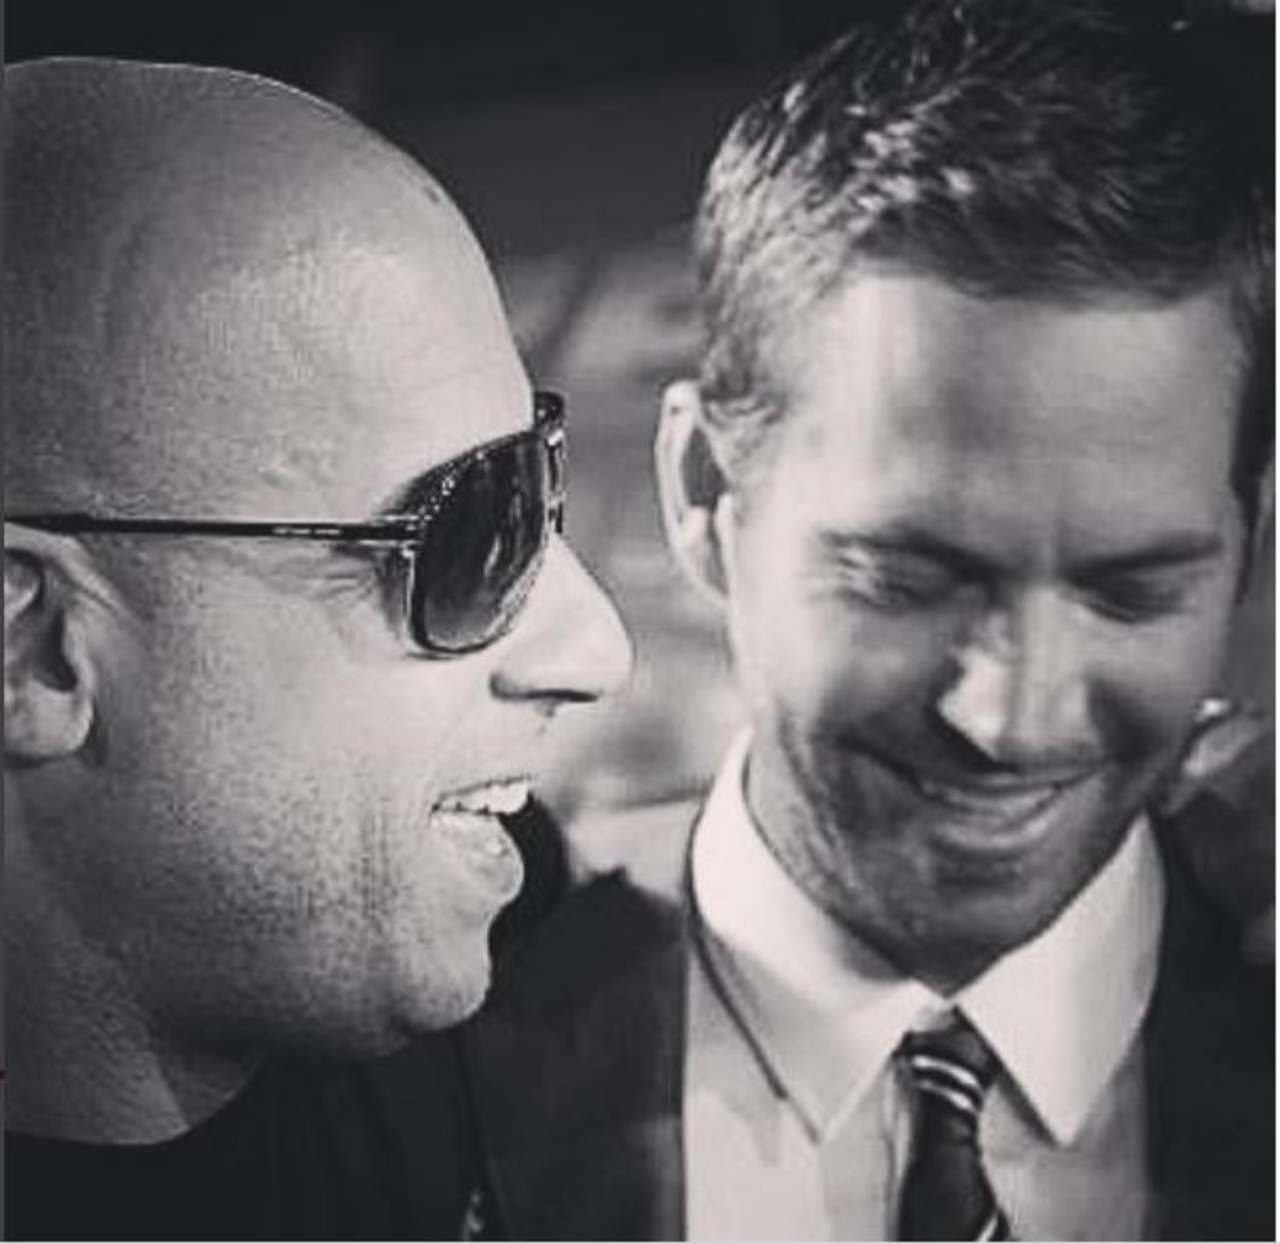 Tristeza. El actor Vin Diesel recordó a su amigo y ‘hermano’, quien dijo que los años sin Paul Walker han sido los más difíciles de su vida.